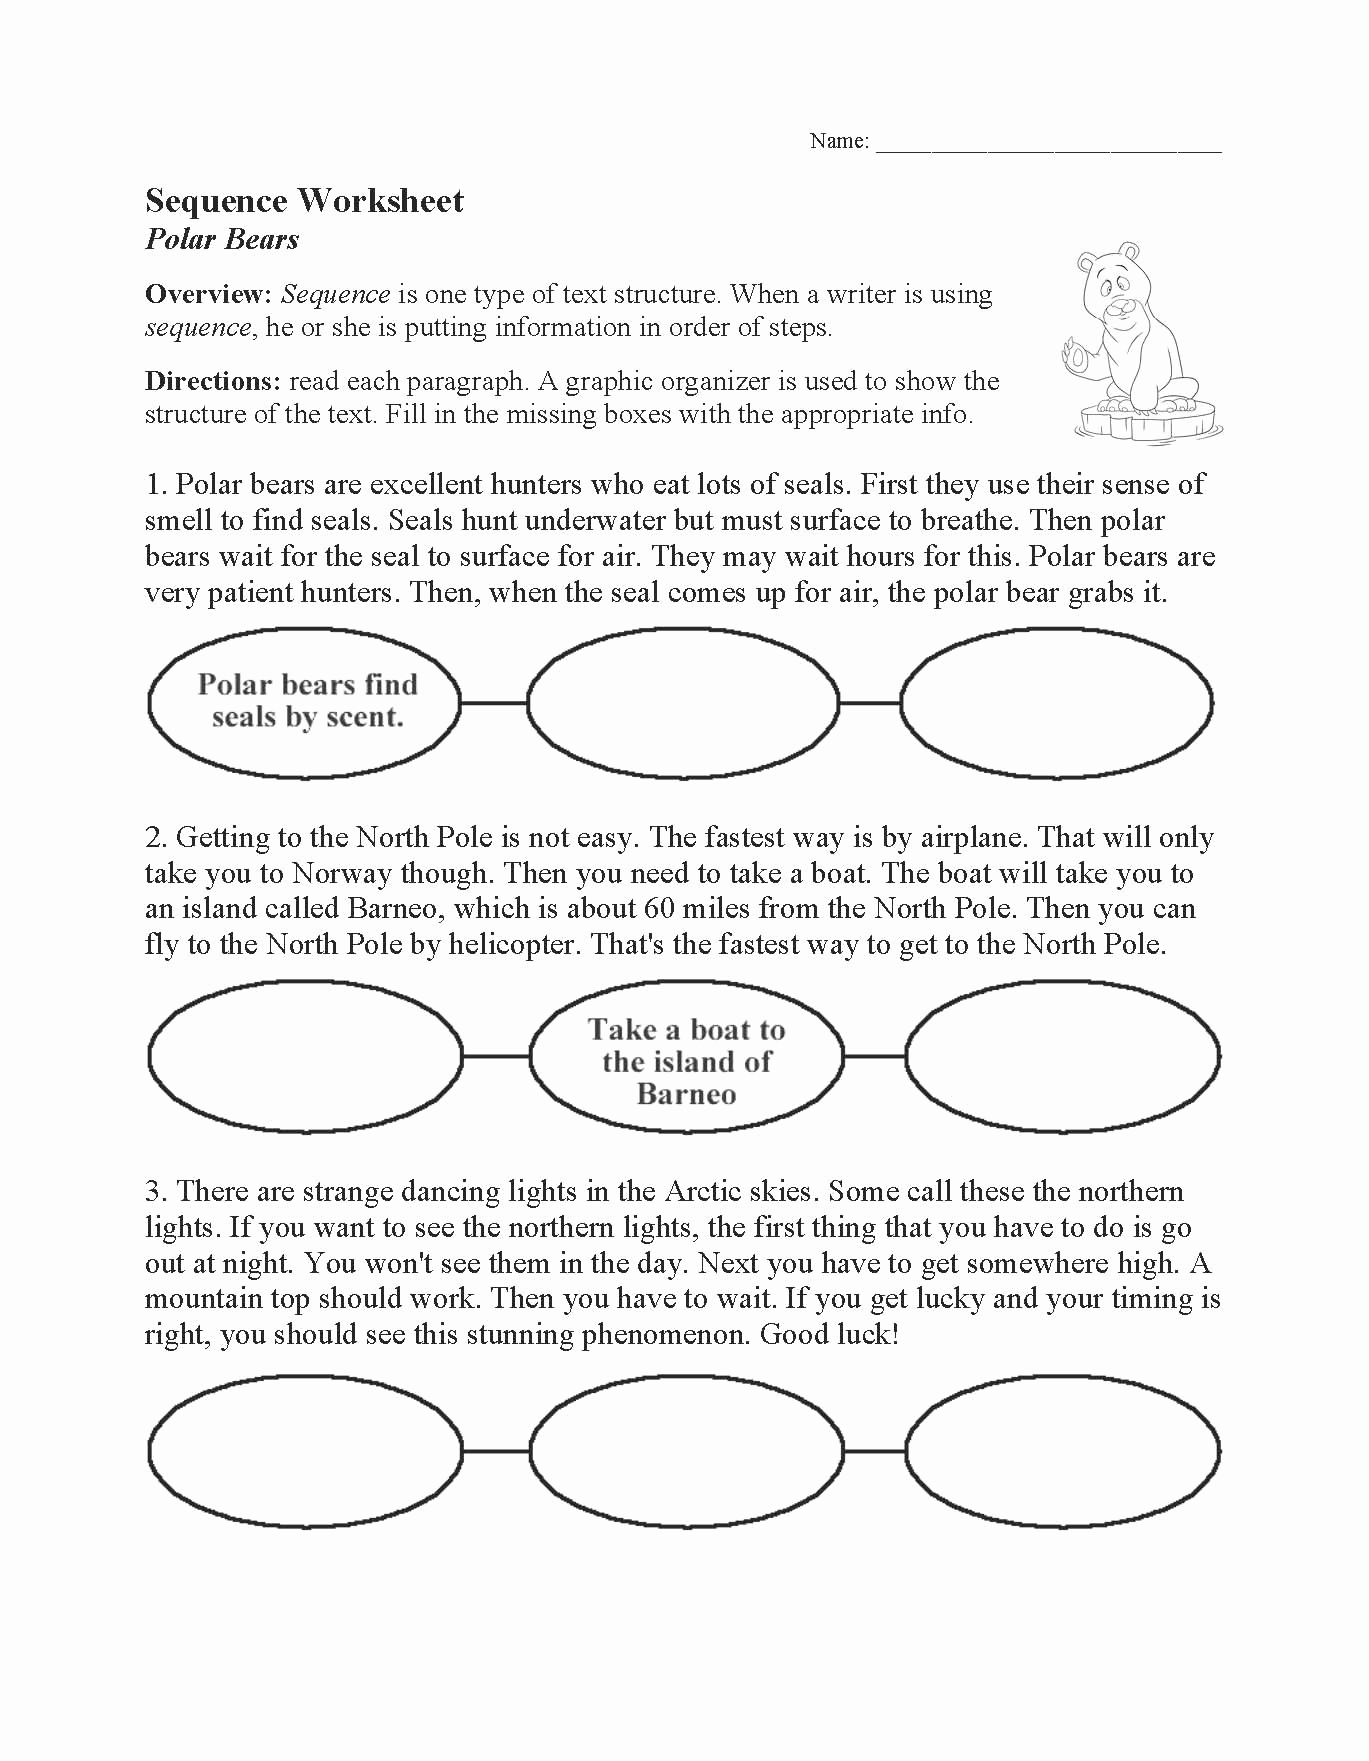 Sequencing Worksheets 4th Grade Elegant 20 Sequencing Worksheets 4th Grade